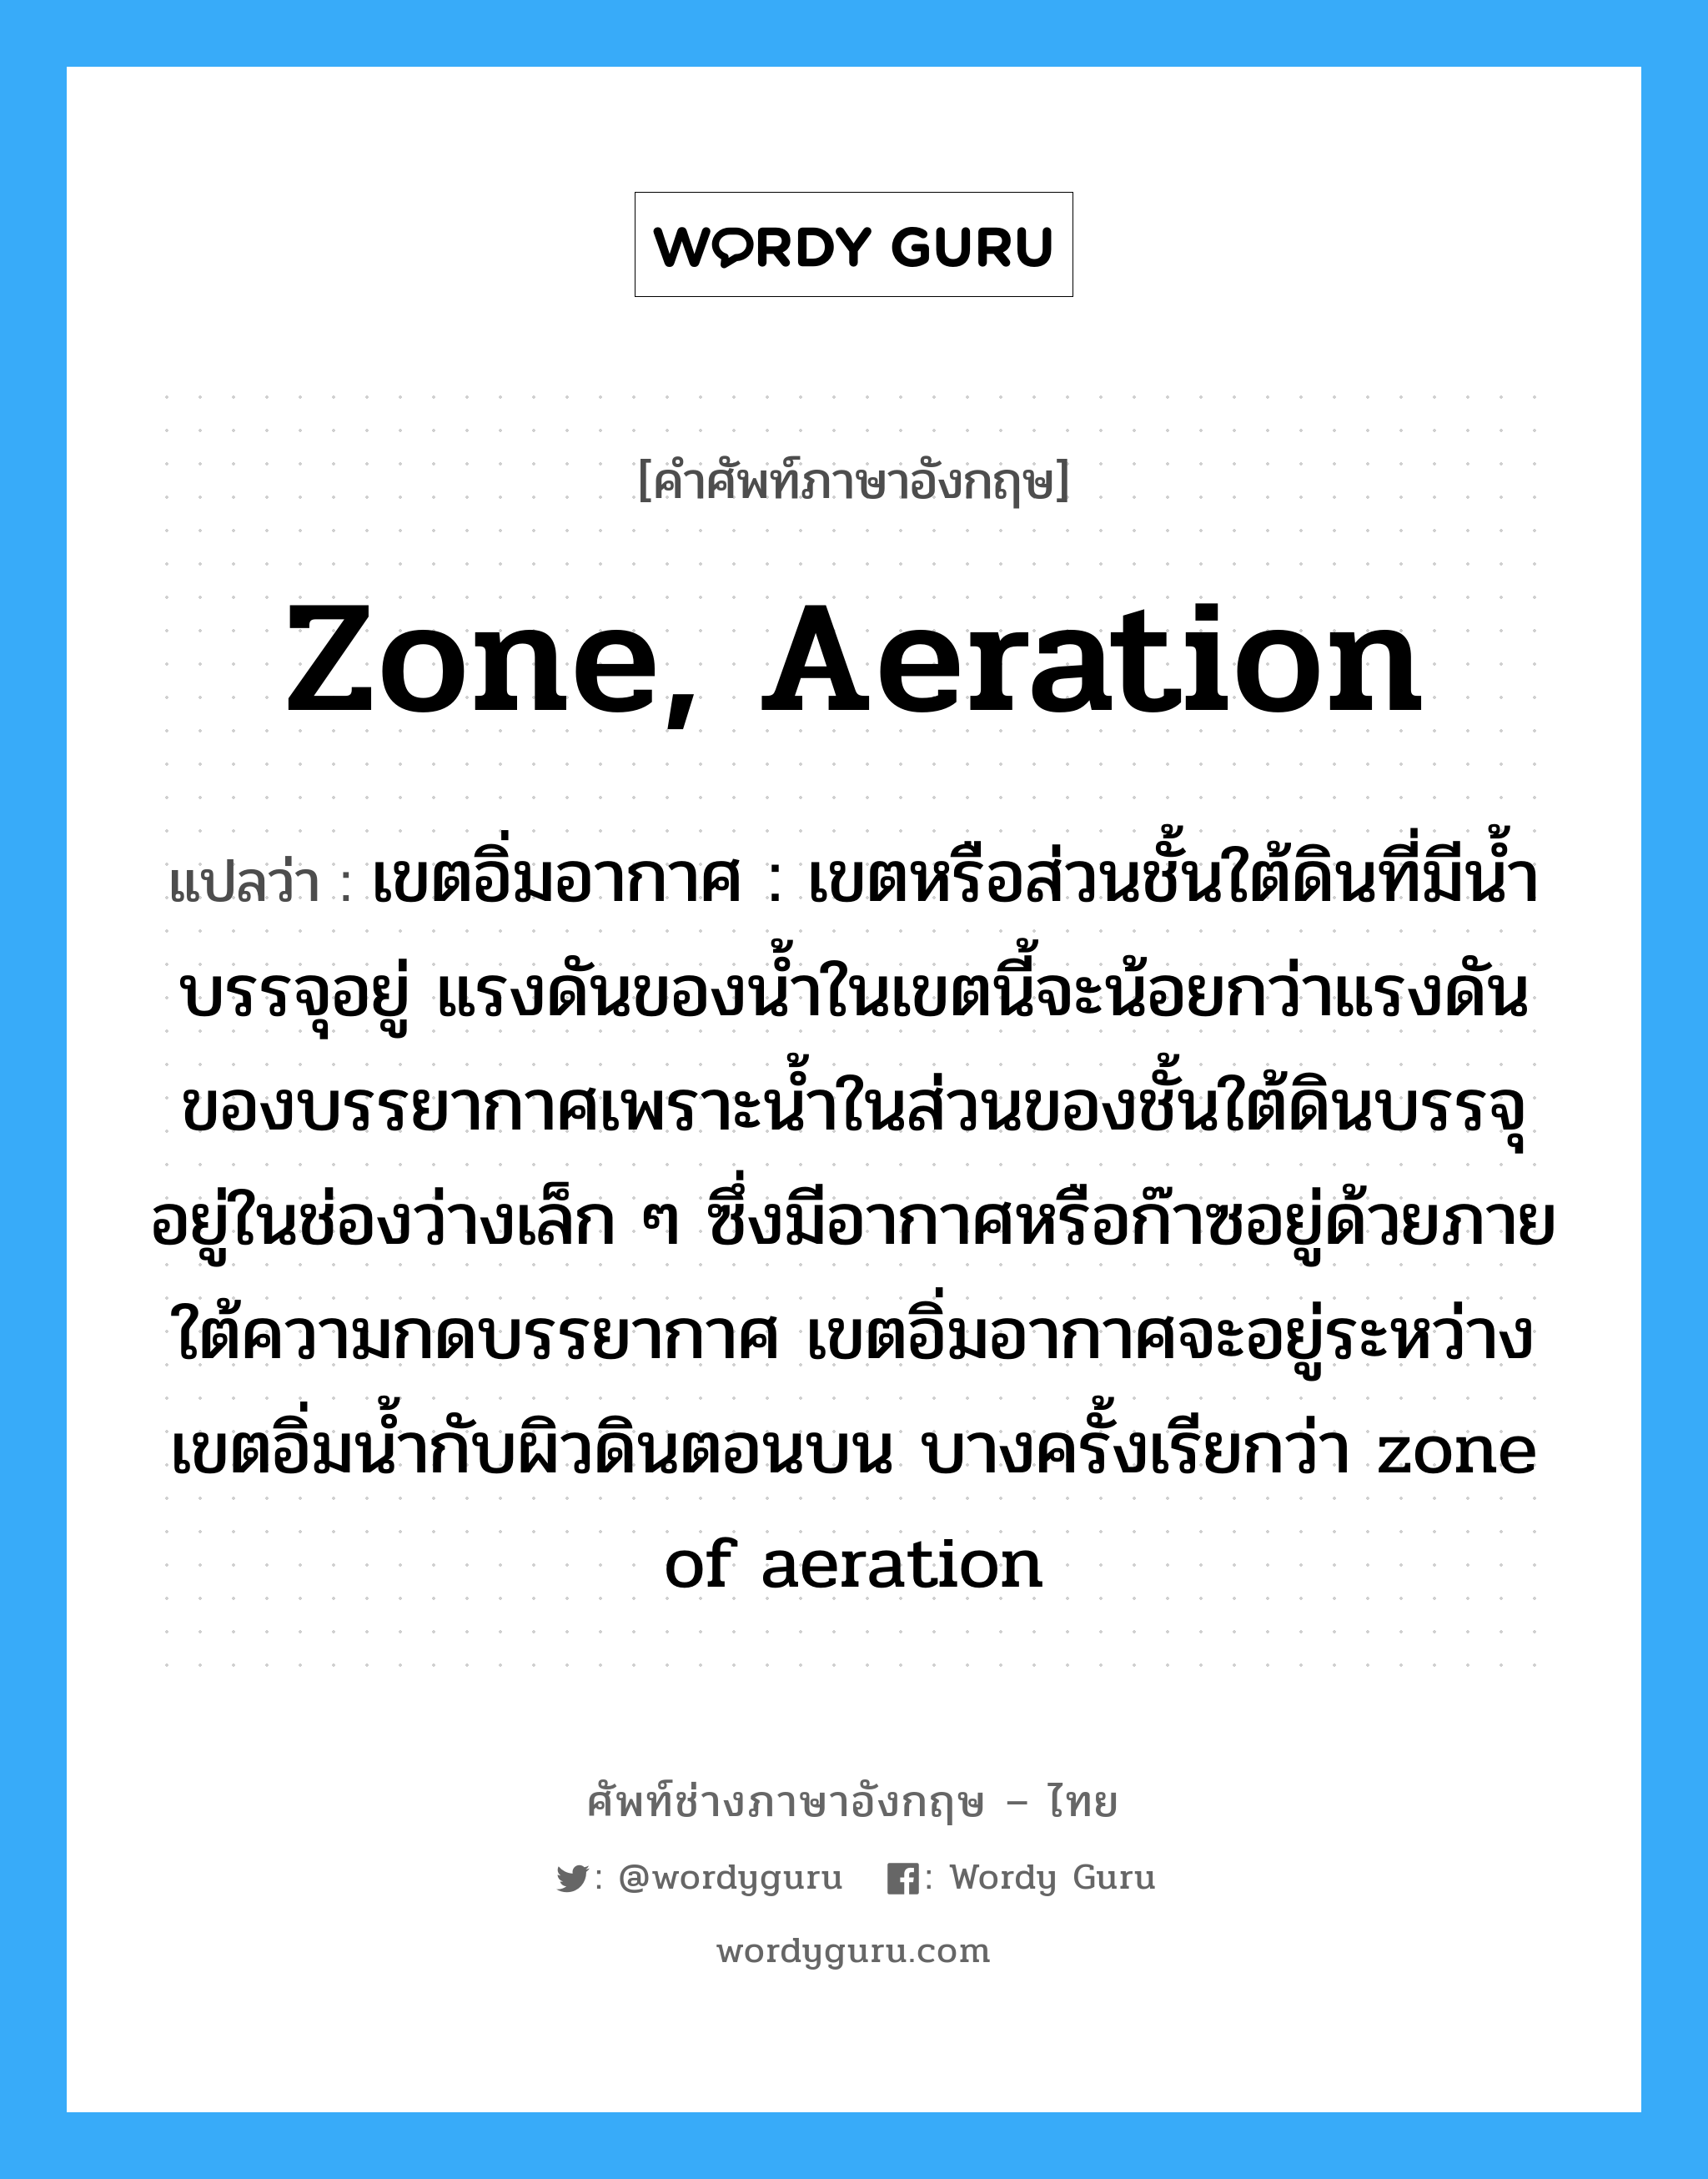 zone, aeration แปลว่า?, คำศัพท์ช่างภาษาอังกฤษ - ไทย zone, aeration คำศัพท์ภาษาอังกฤษ zone, aeration แปลว่า เขตอิ่มอากาศ : เขตหรือส่วนชั้นใต้ดินที่มีน้ำบรรจุอยู่ แรงดันของน้ำในเขตนี้จะน้อยกว่าแรงดัน ของบรรยากาศเพราะน้ำในส่วนของชั้นใต้ดินบรรจุอยู่ในช่องว่างเล็ก ๆ ซึ่งมีอากาศหรือก๊าซอยู่ด้วยภายใต้ความกดบรรยากาศ เขตอิ่มอากาศจะอยู่ระหว่างเขตอิ่มน้ำกับผิวดินตอนบน บางครั้งเรียกว่า zone of aeration